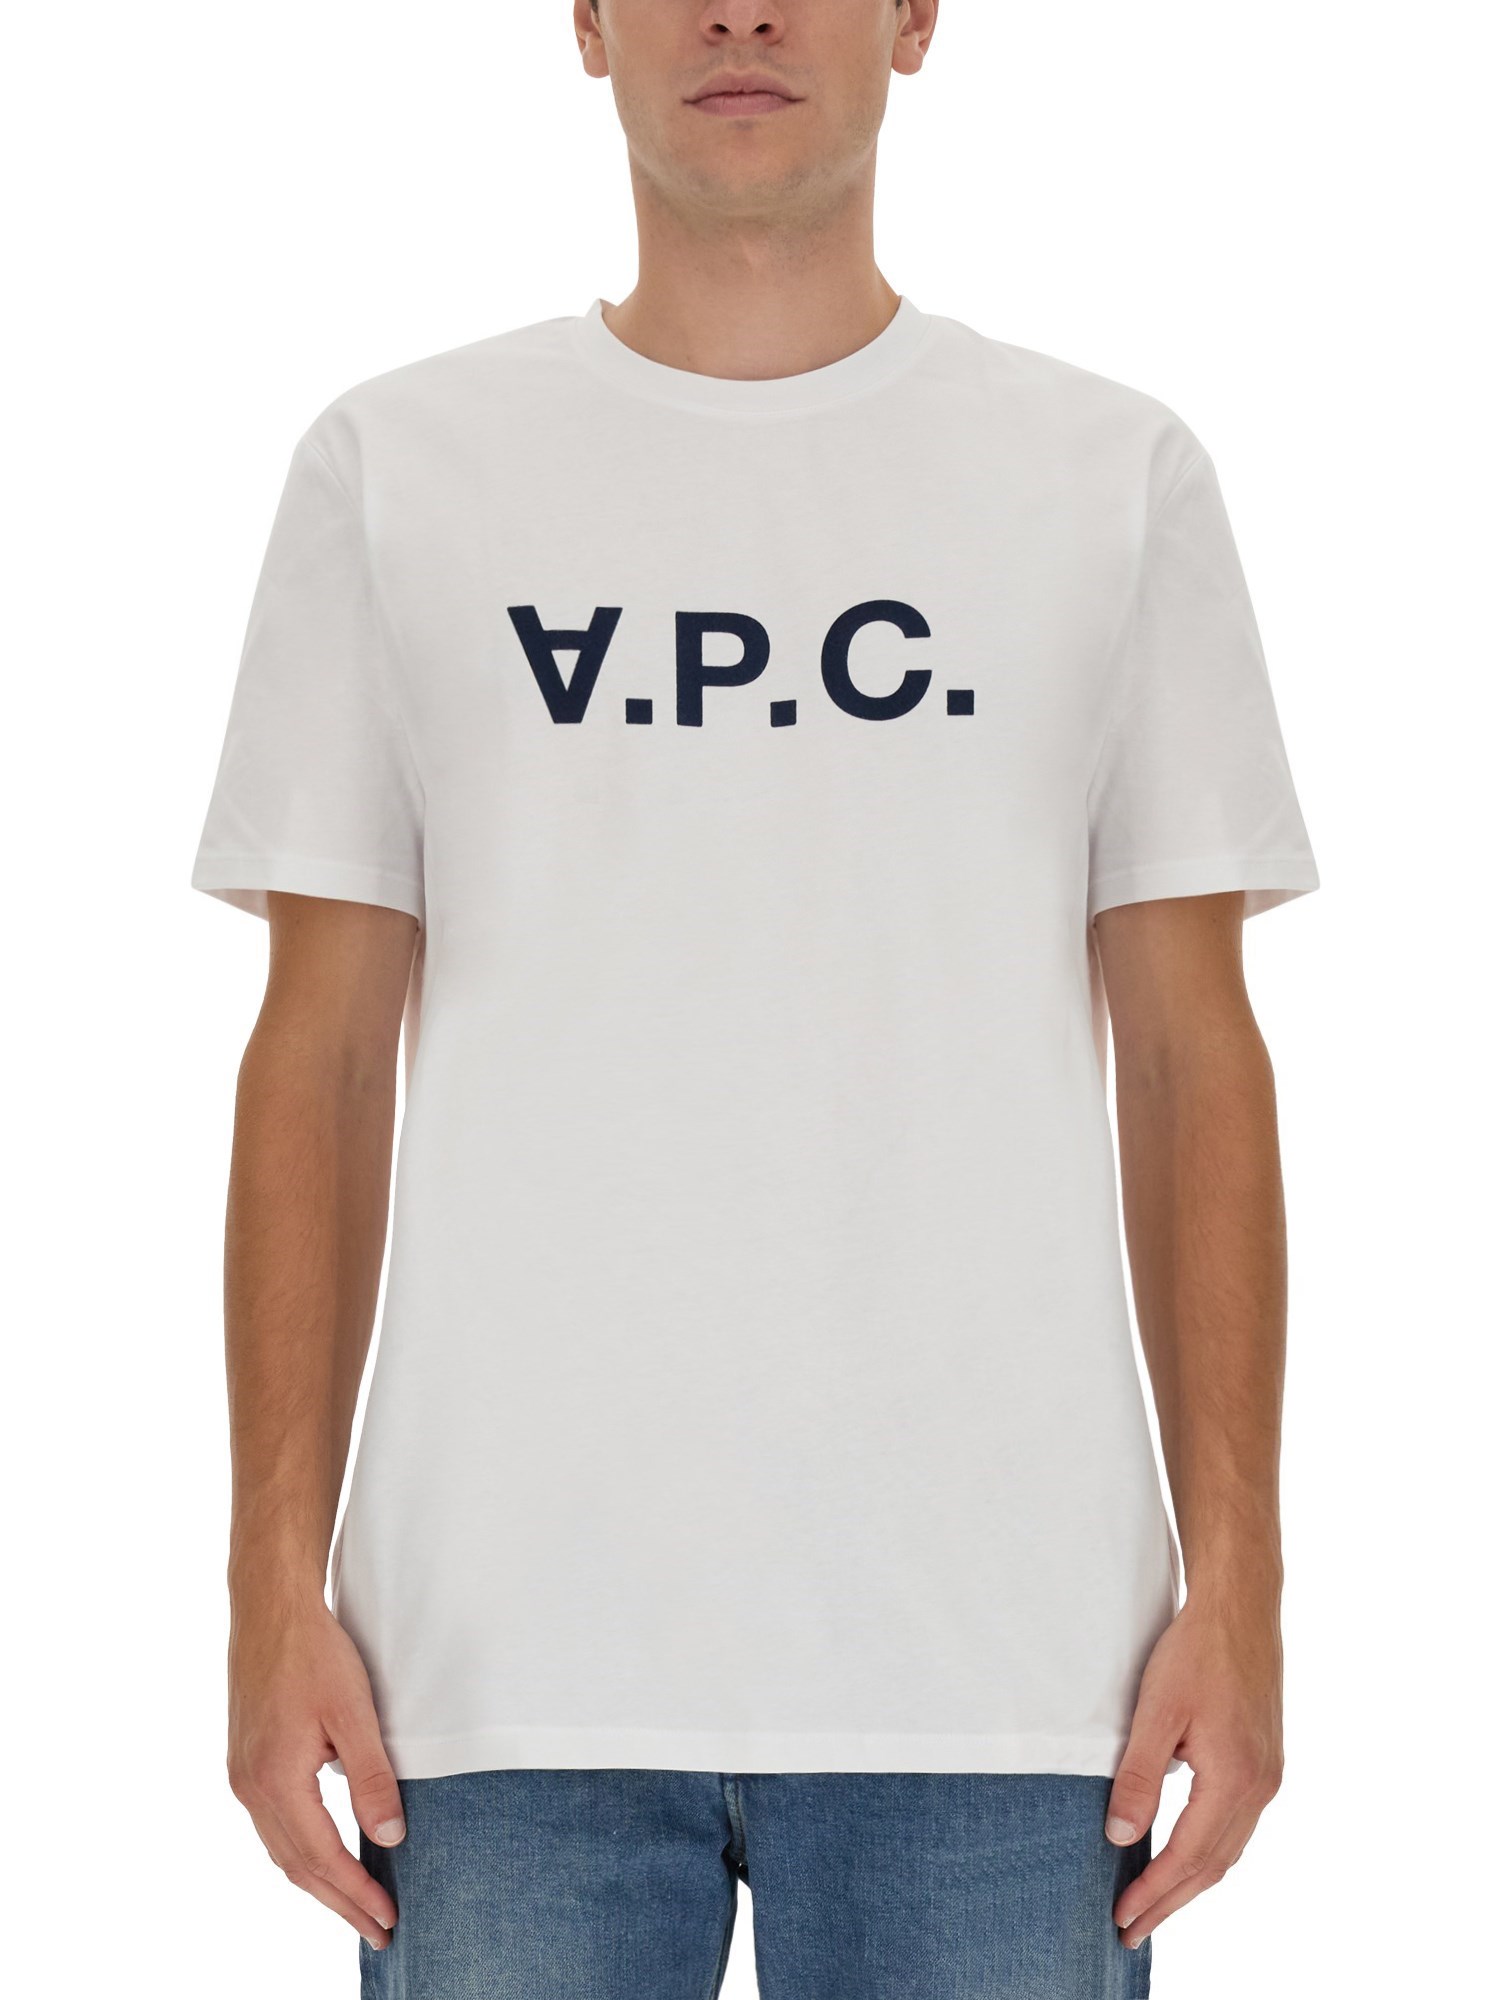 A.P.C. a.p.c. t-shirt with v.p.c logo